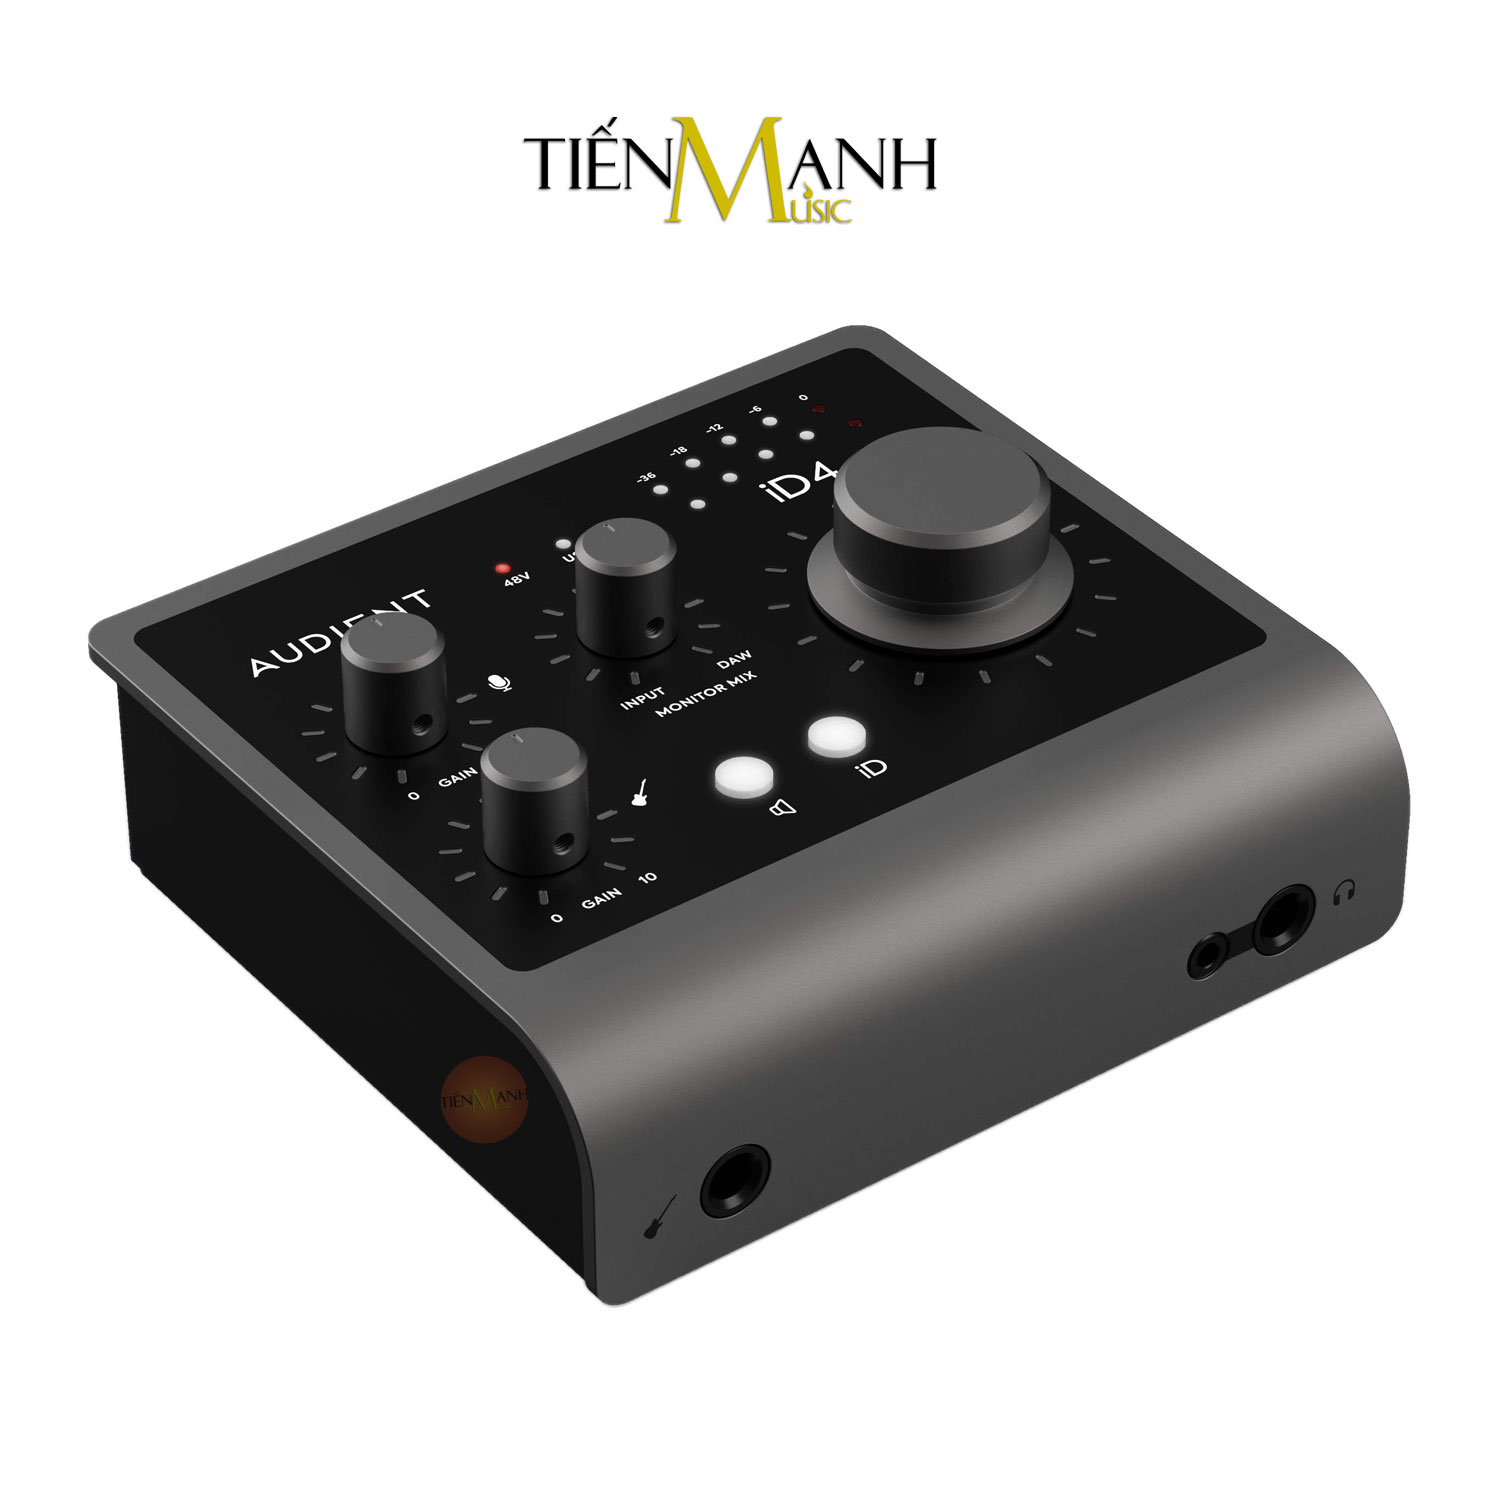 Soundcard Audient iD4 MK2 - Sound Card Bộ Thu Âm Thanh và Livestream MKII Audio Interface Hàng Chính Hãng - Kèm Móng Gẩy DreamMaker